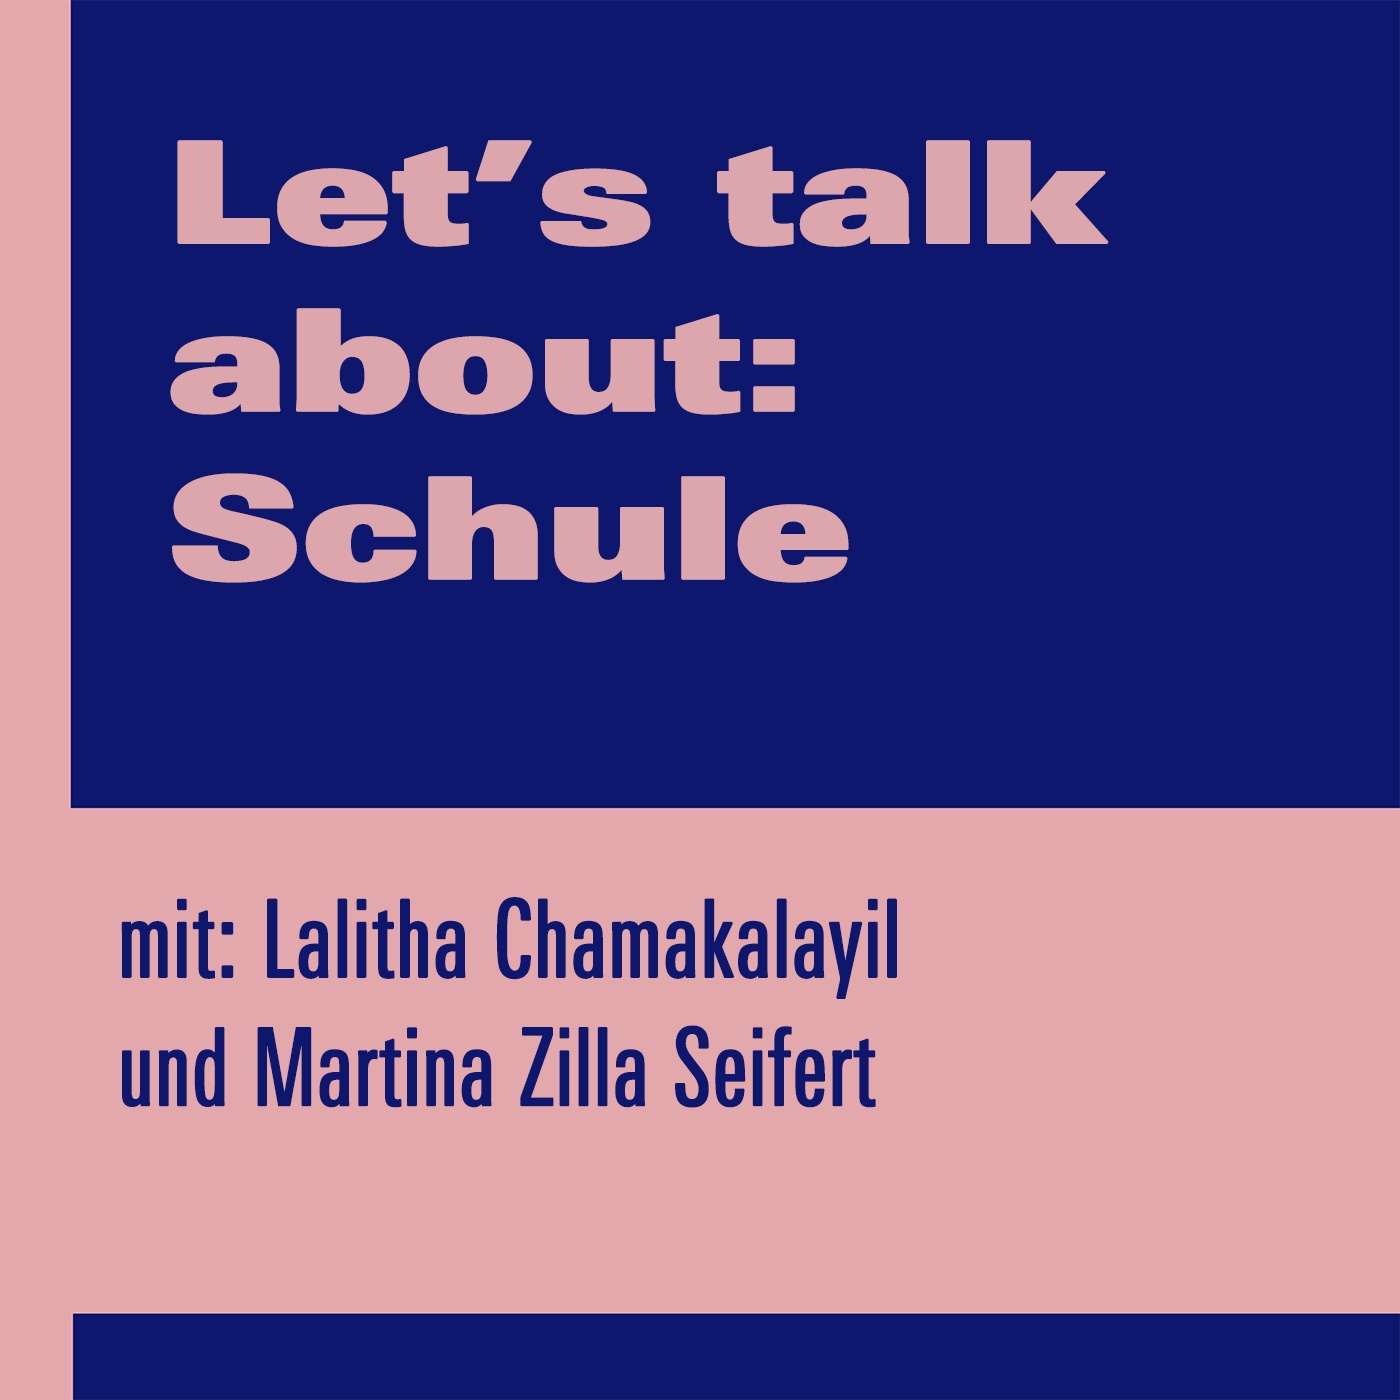 Let’s talk about: Schule